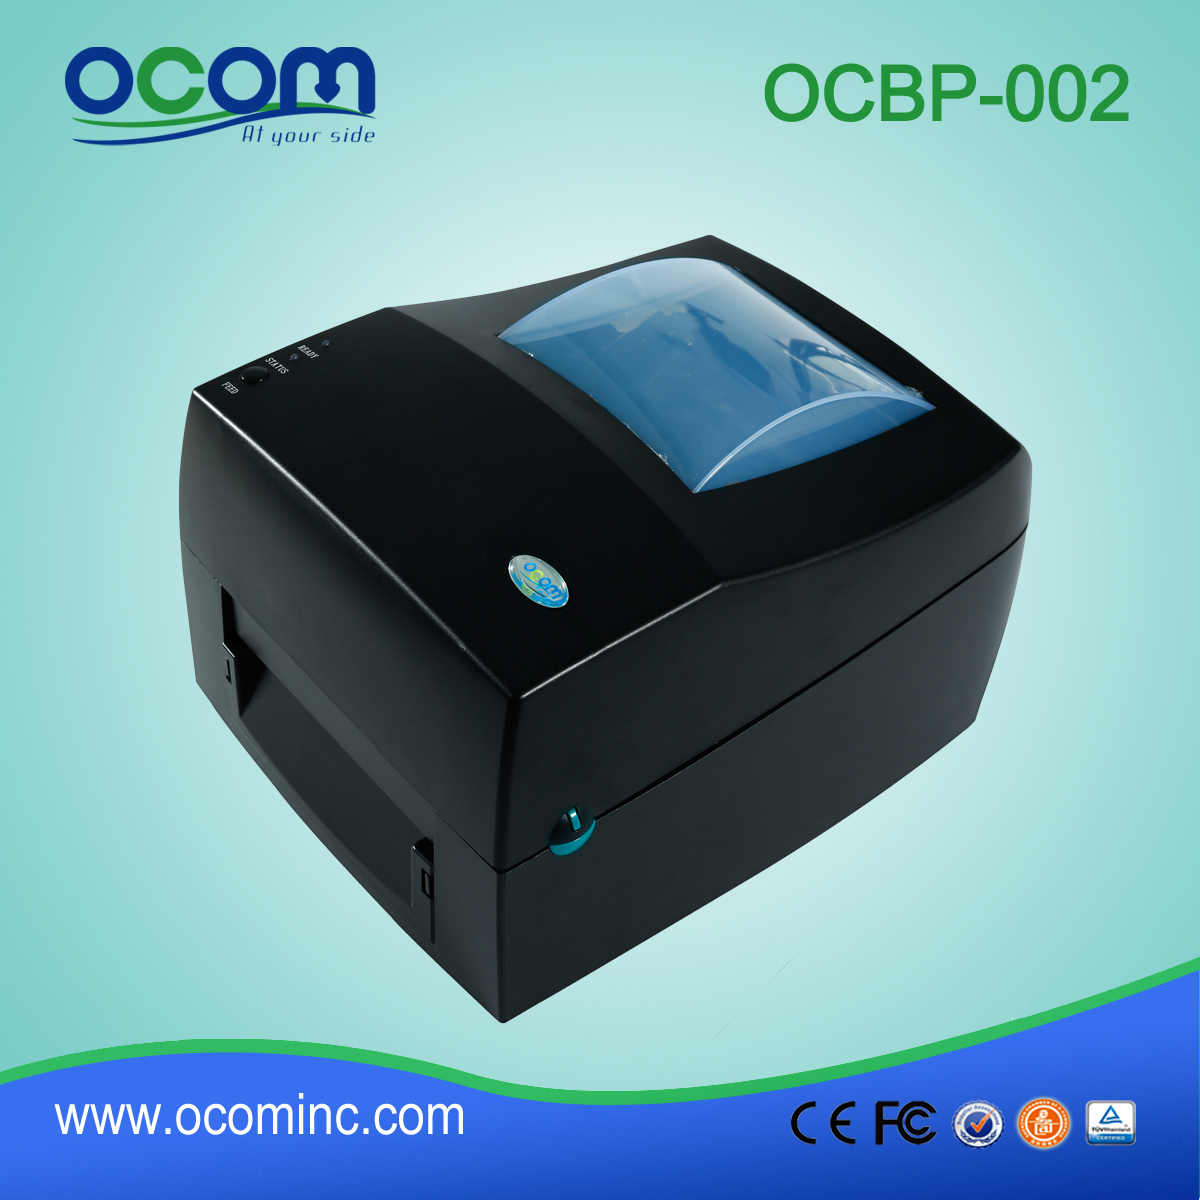 惠价的热转和热敏条码标签打印机OCBP-002